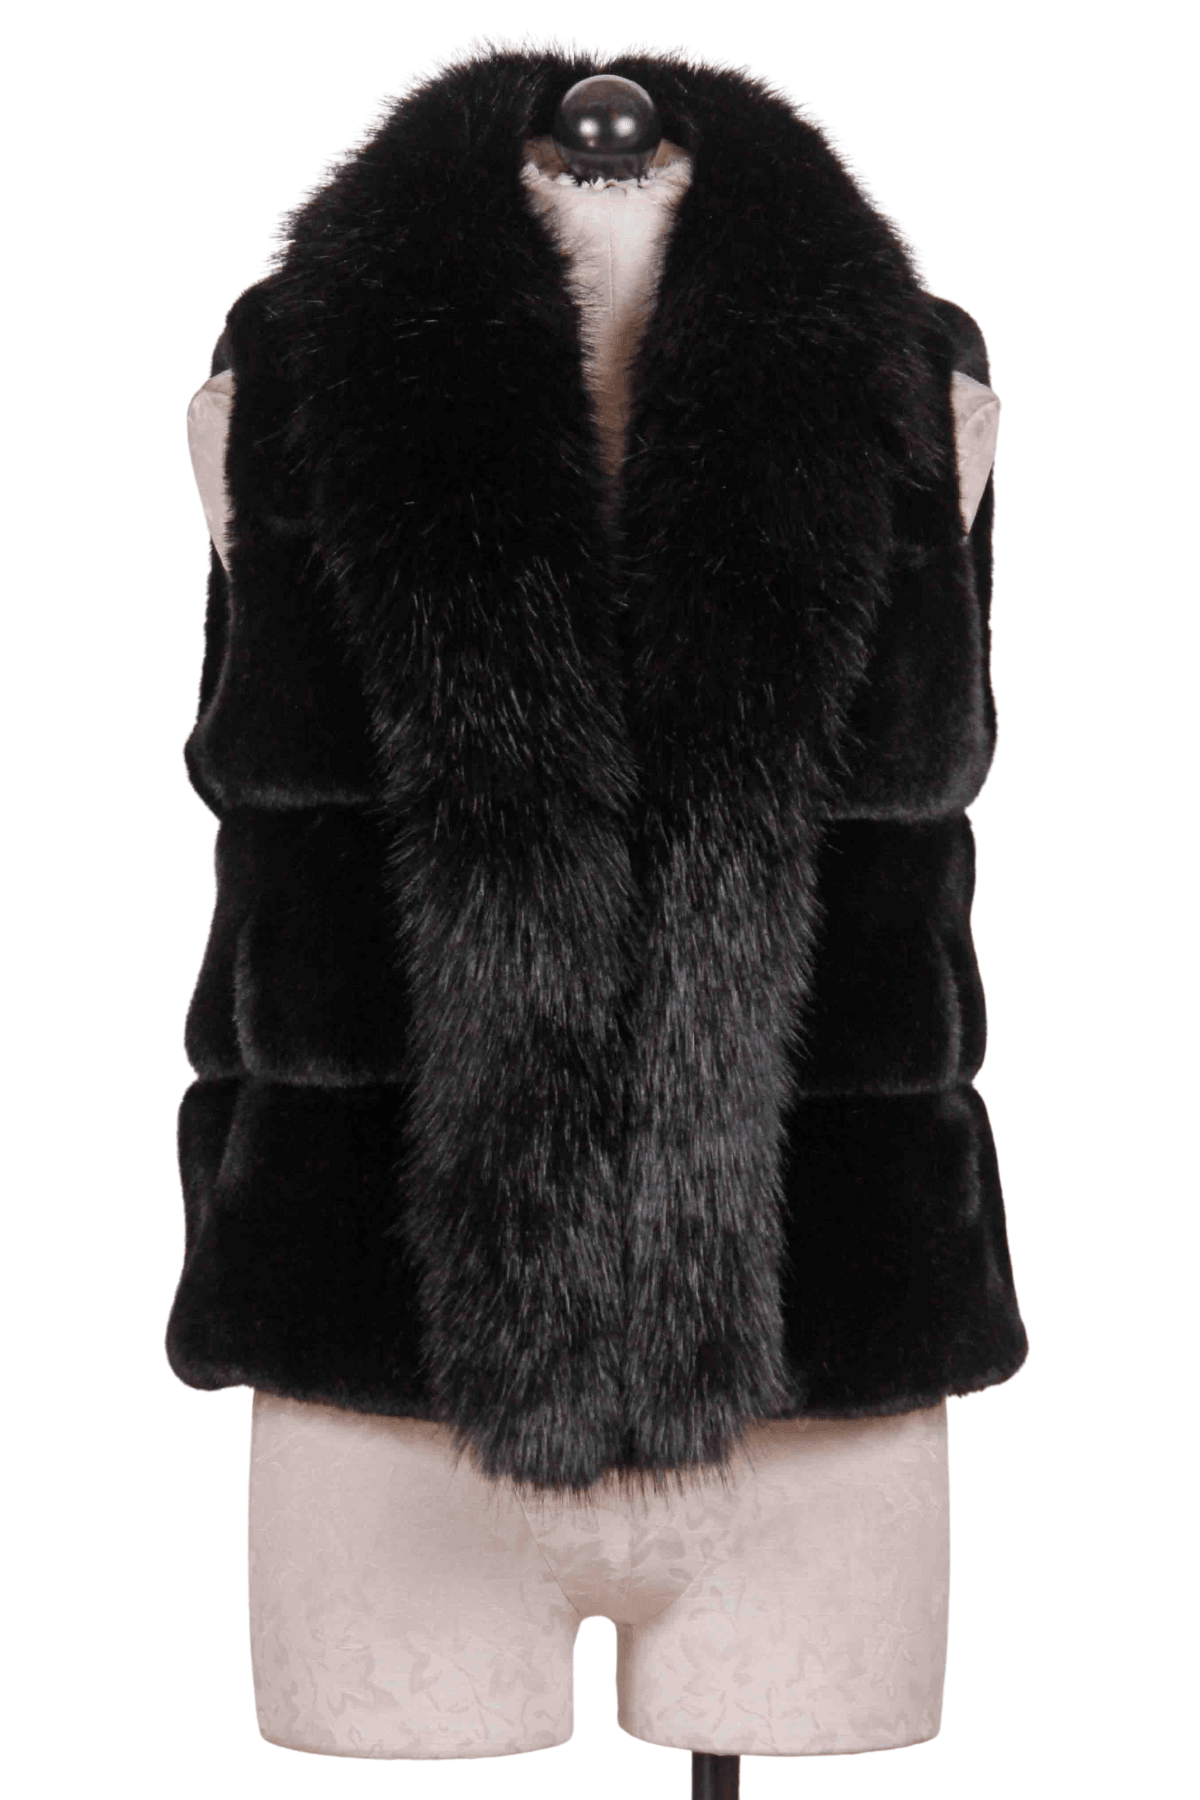 Black Phoebe Faux Fur Vest by Generation Love